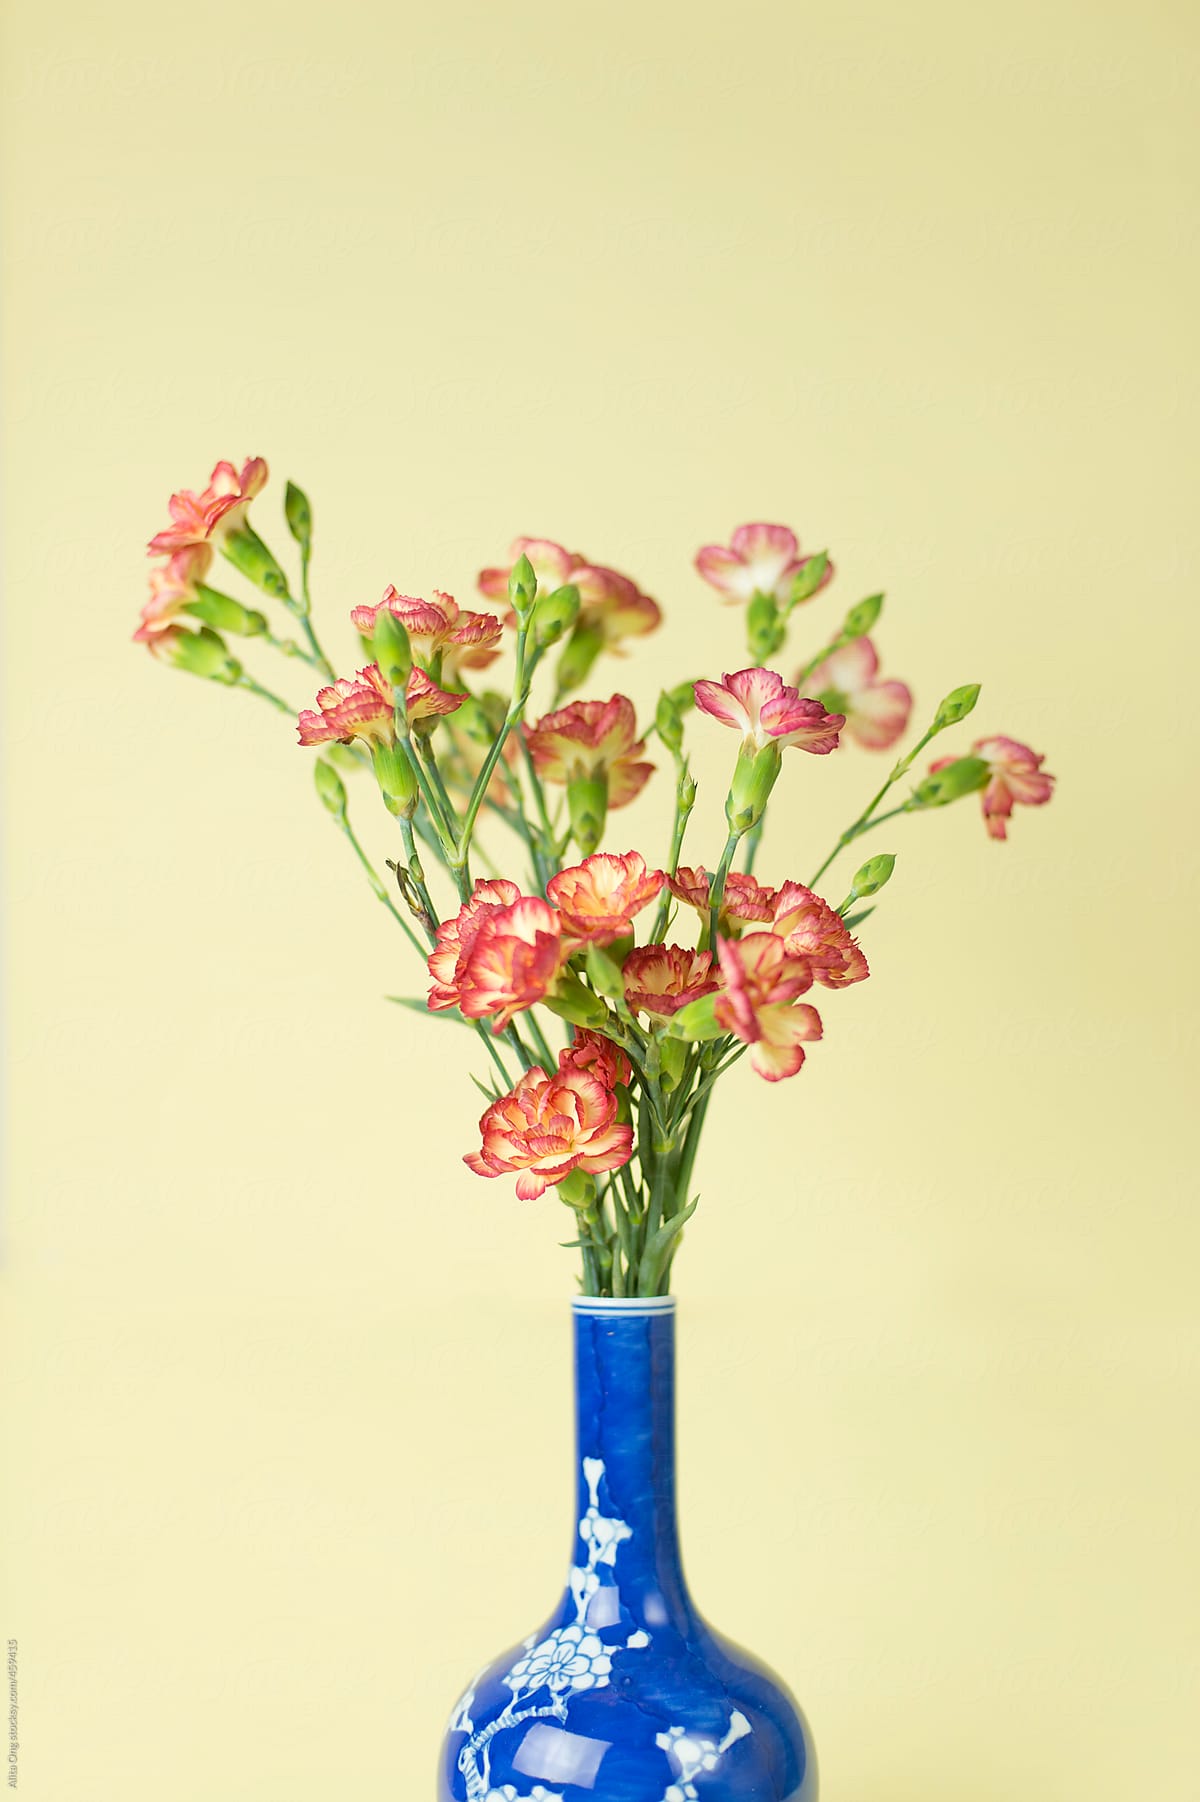 Carnation in blue vase